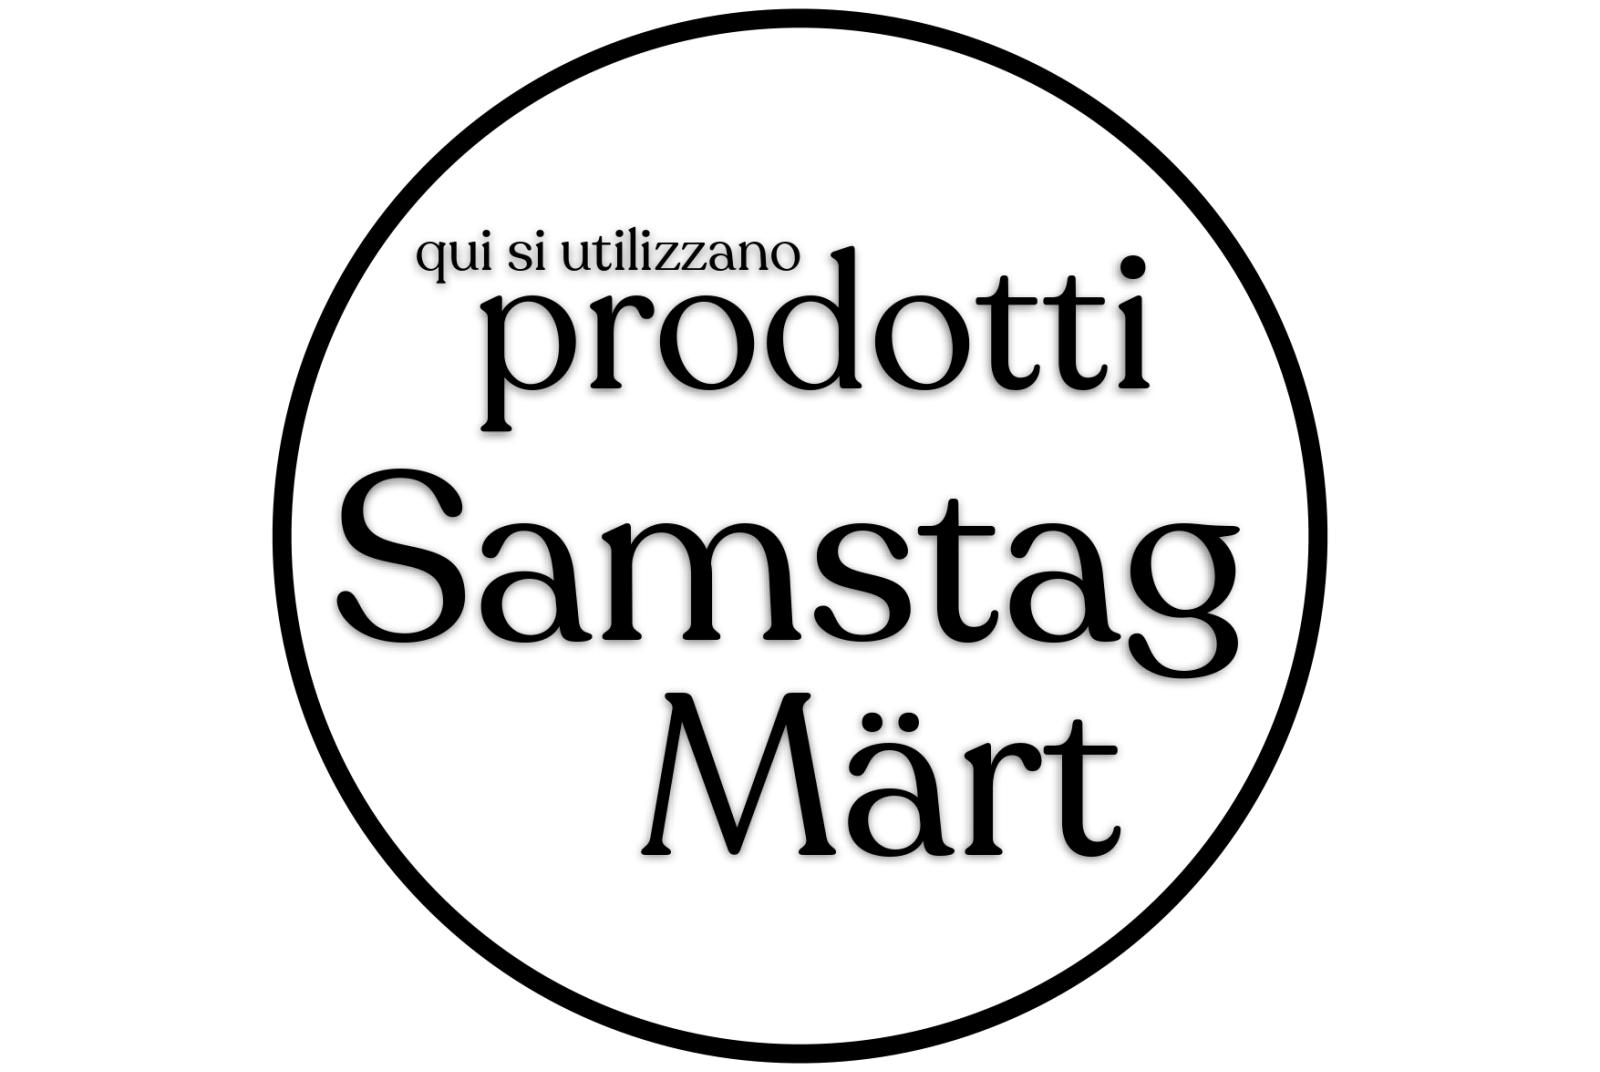 Qui si utilizzano prodotti Samstag Märt – Gressoney